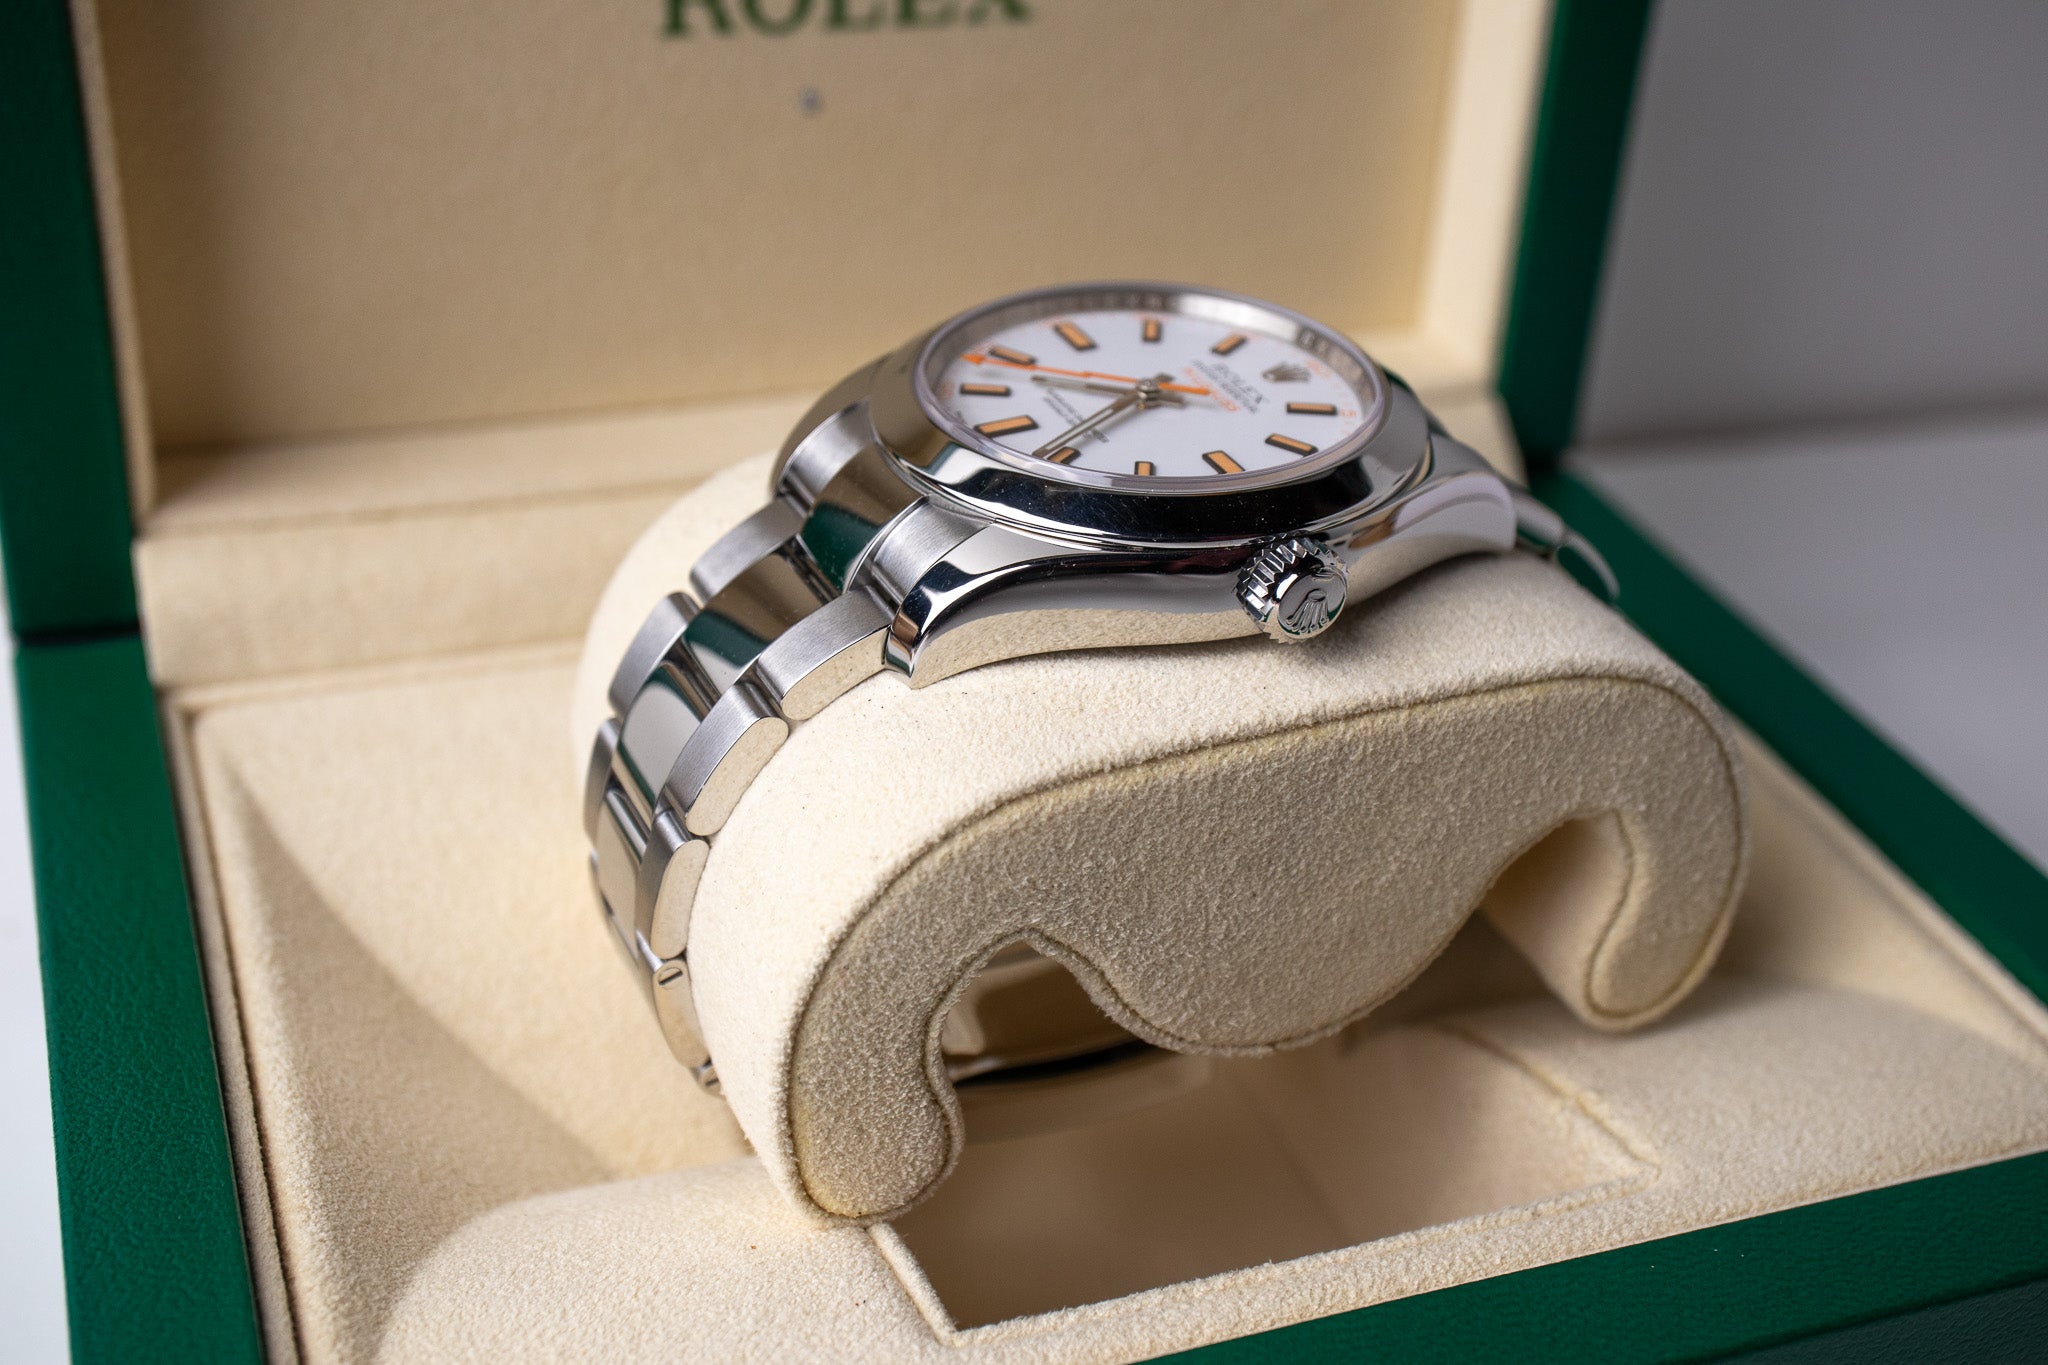 Rolex Milgauss 116400 White